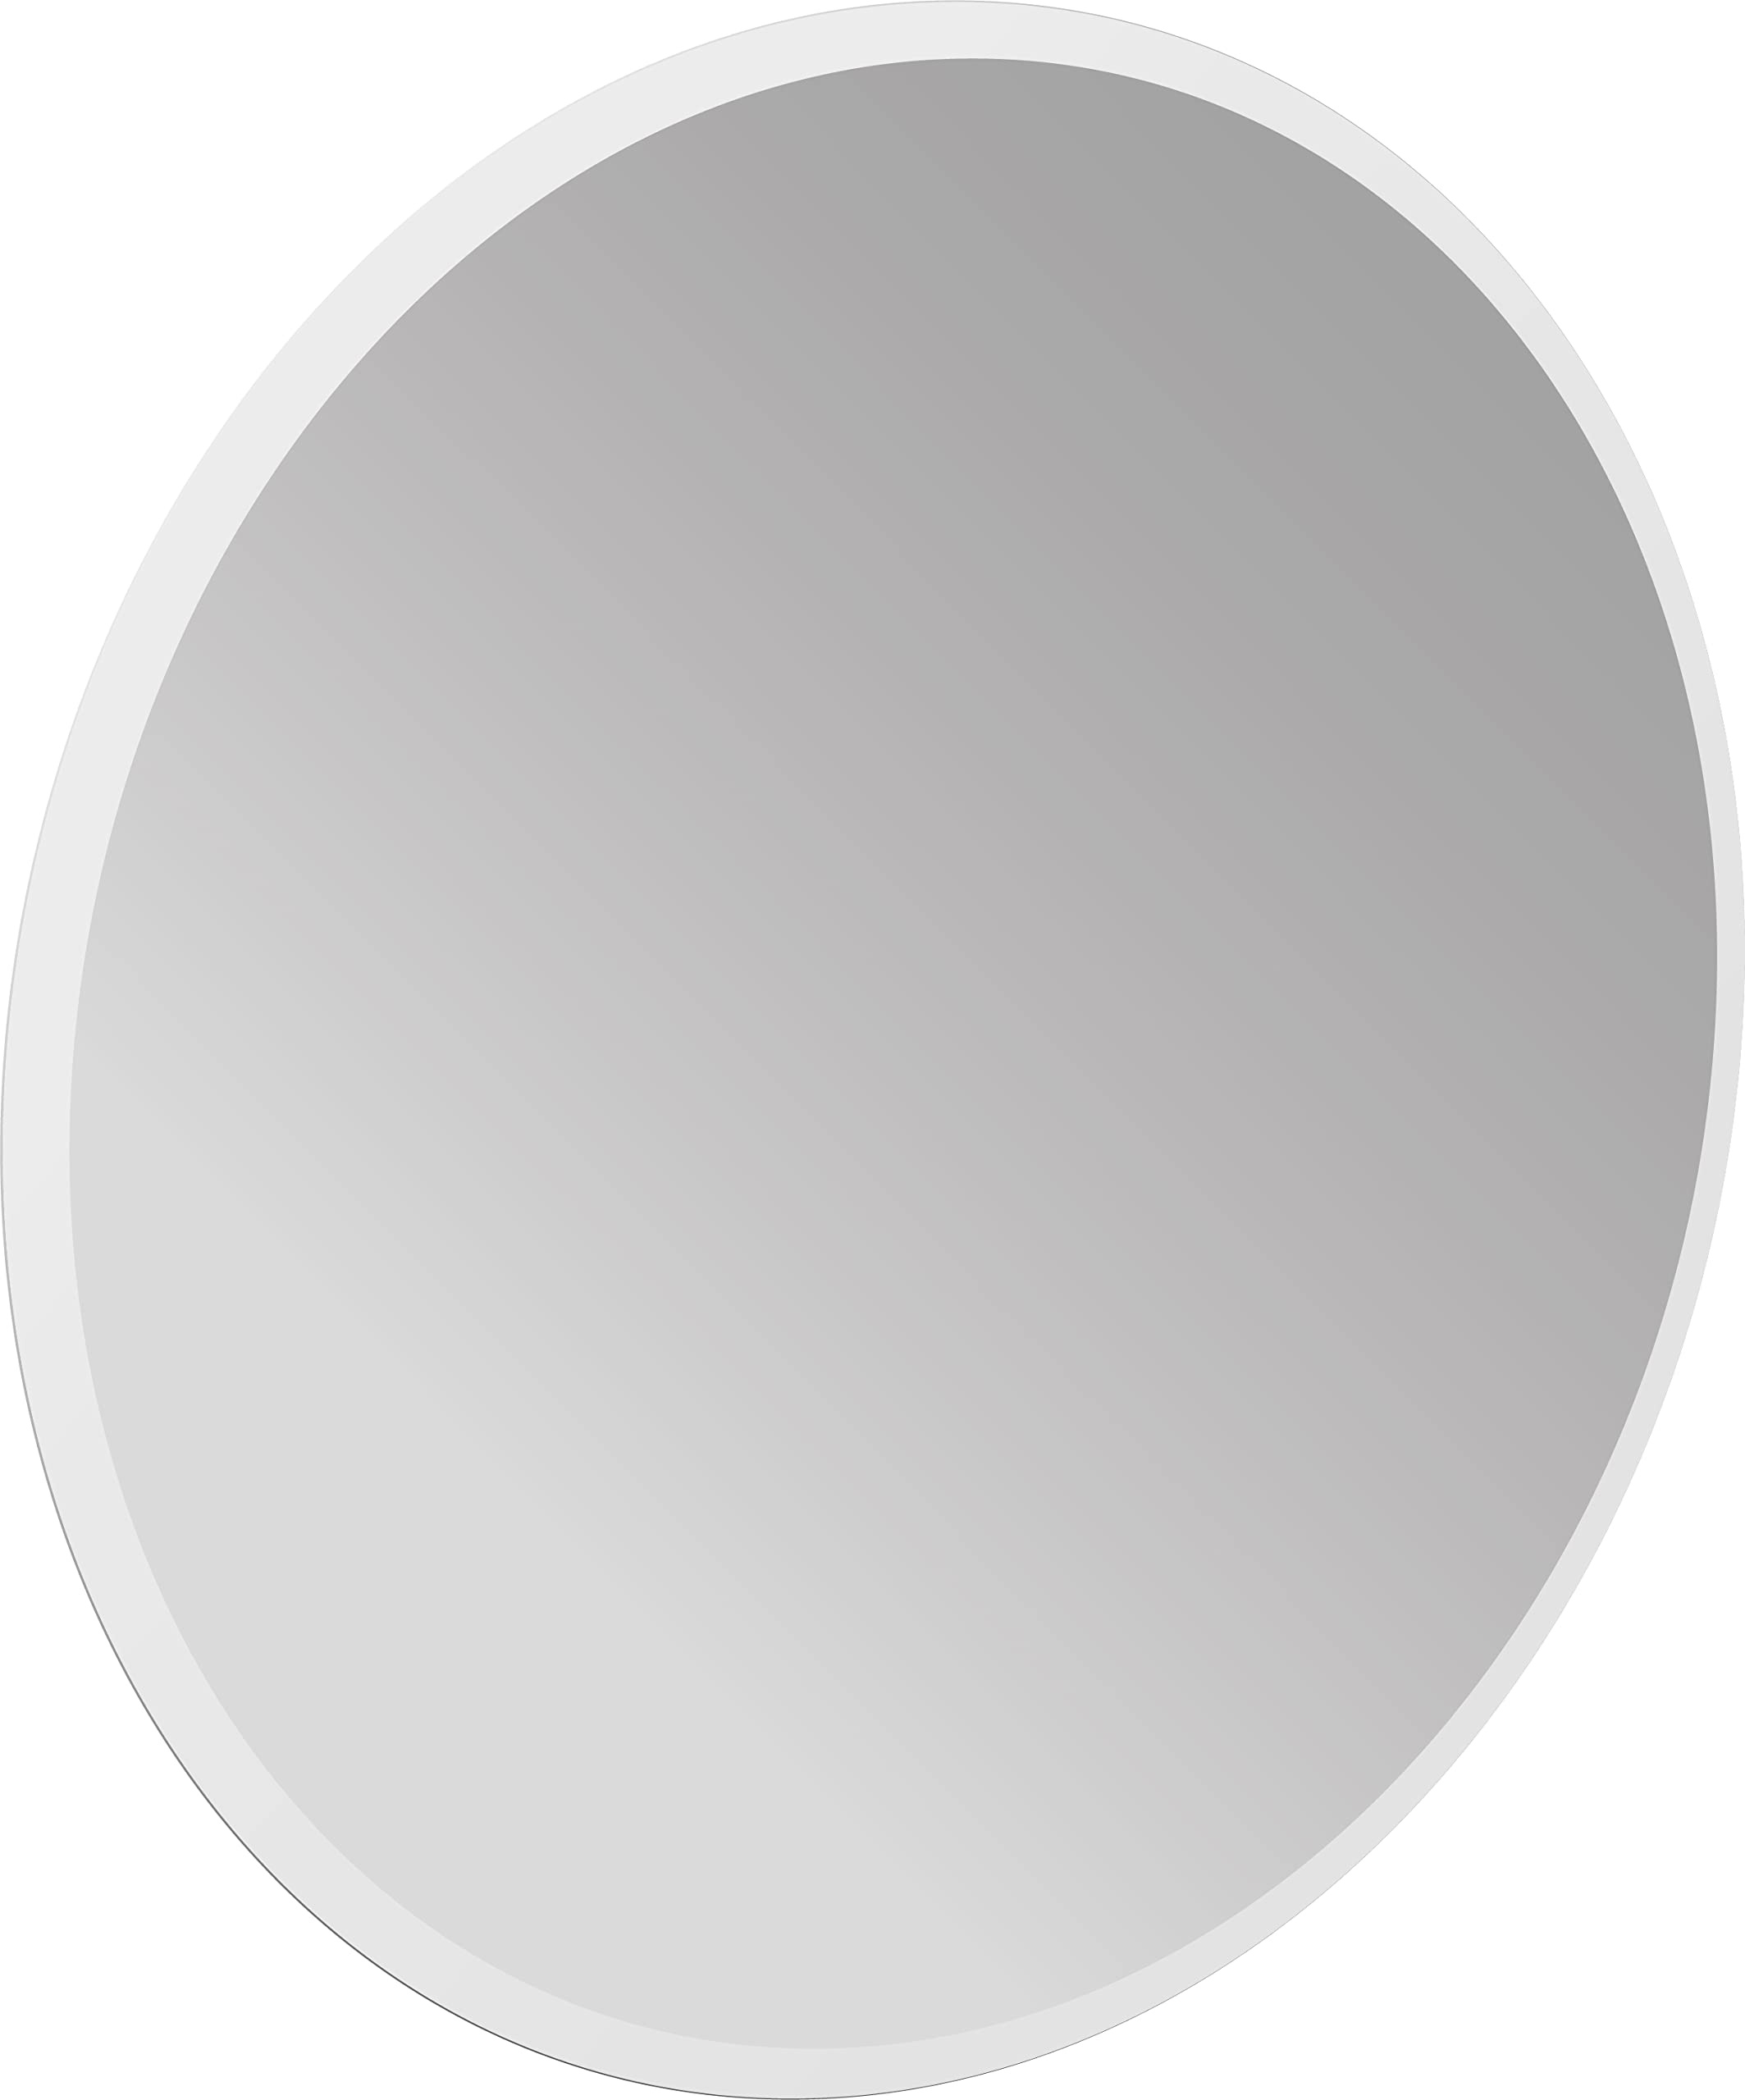 Emco Pure + LED-Lichtspiegel Ø 60 cm, Spiegel inkl. LED-Beleuchtung für Raumschaltung, Badezimmerspiegel mit umlaufender Mattierung zur Wandmontage